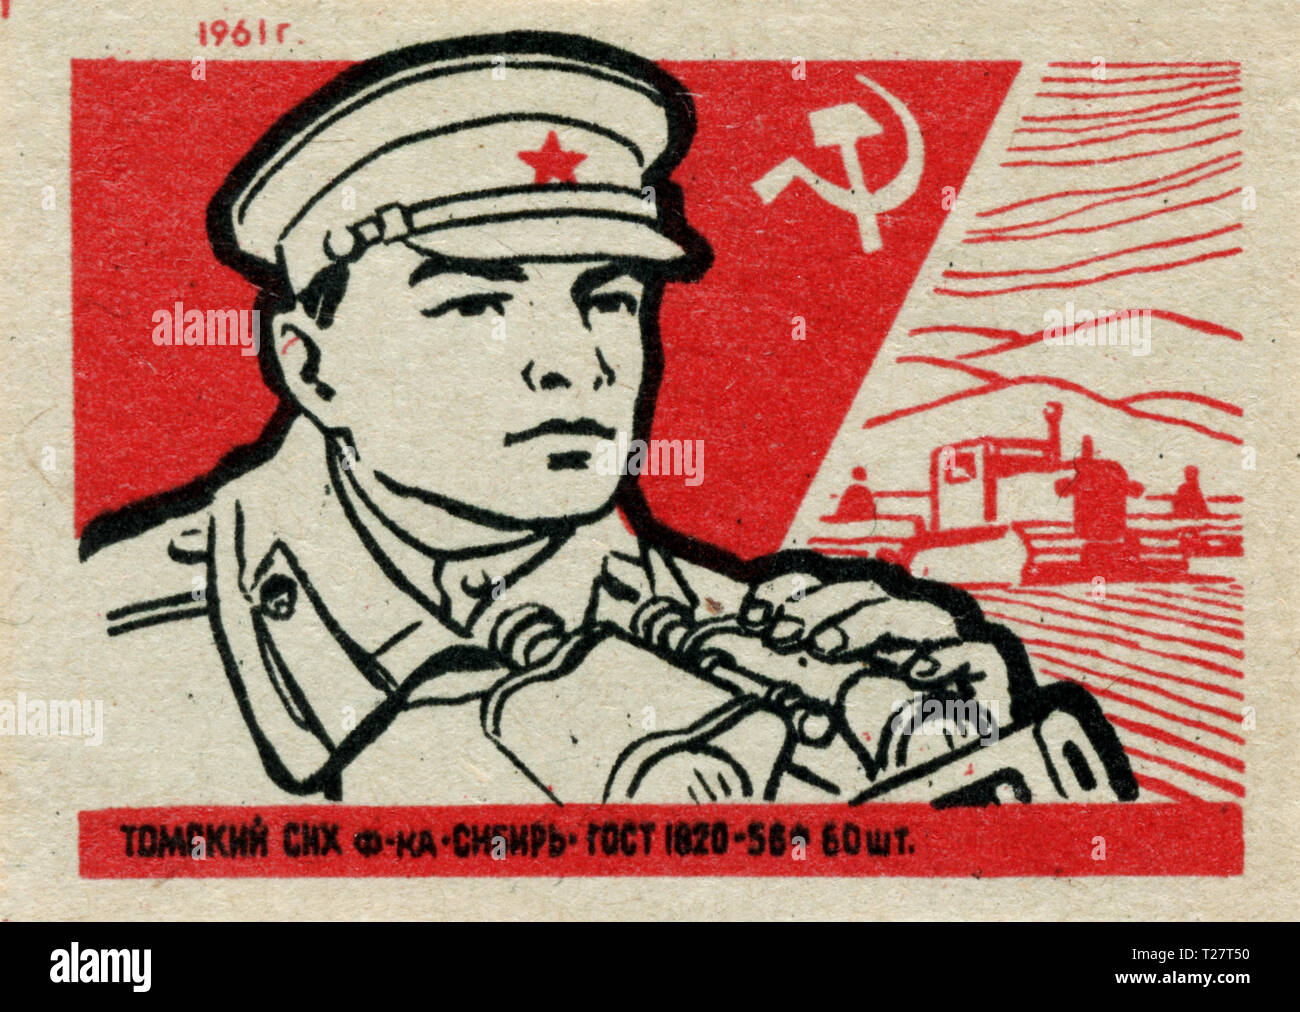 Russland - 1961: Sowjetunion Propaganda, streichholzschachtel Grafiksammlung, UDSSR Armee Stockfoto